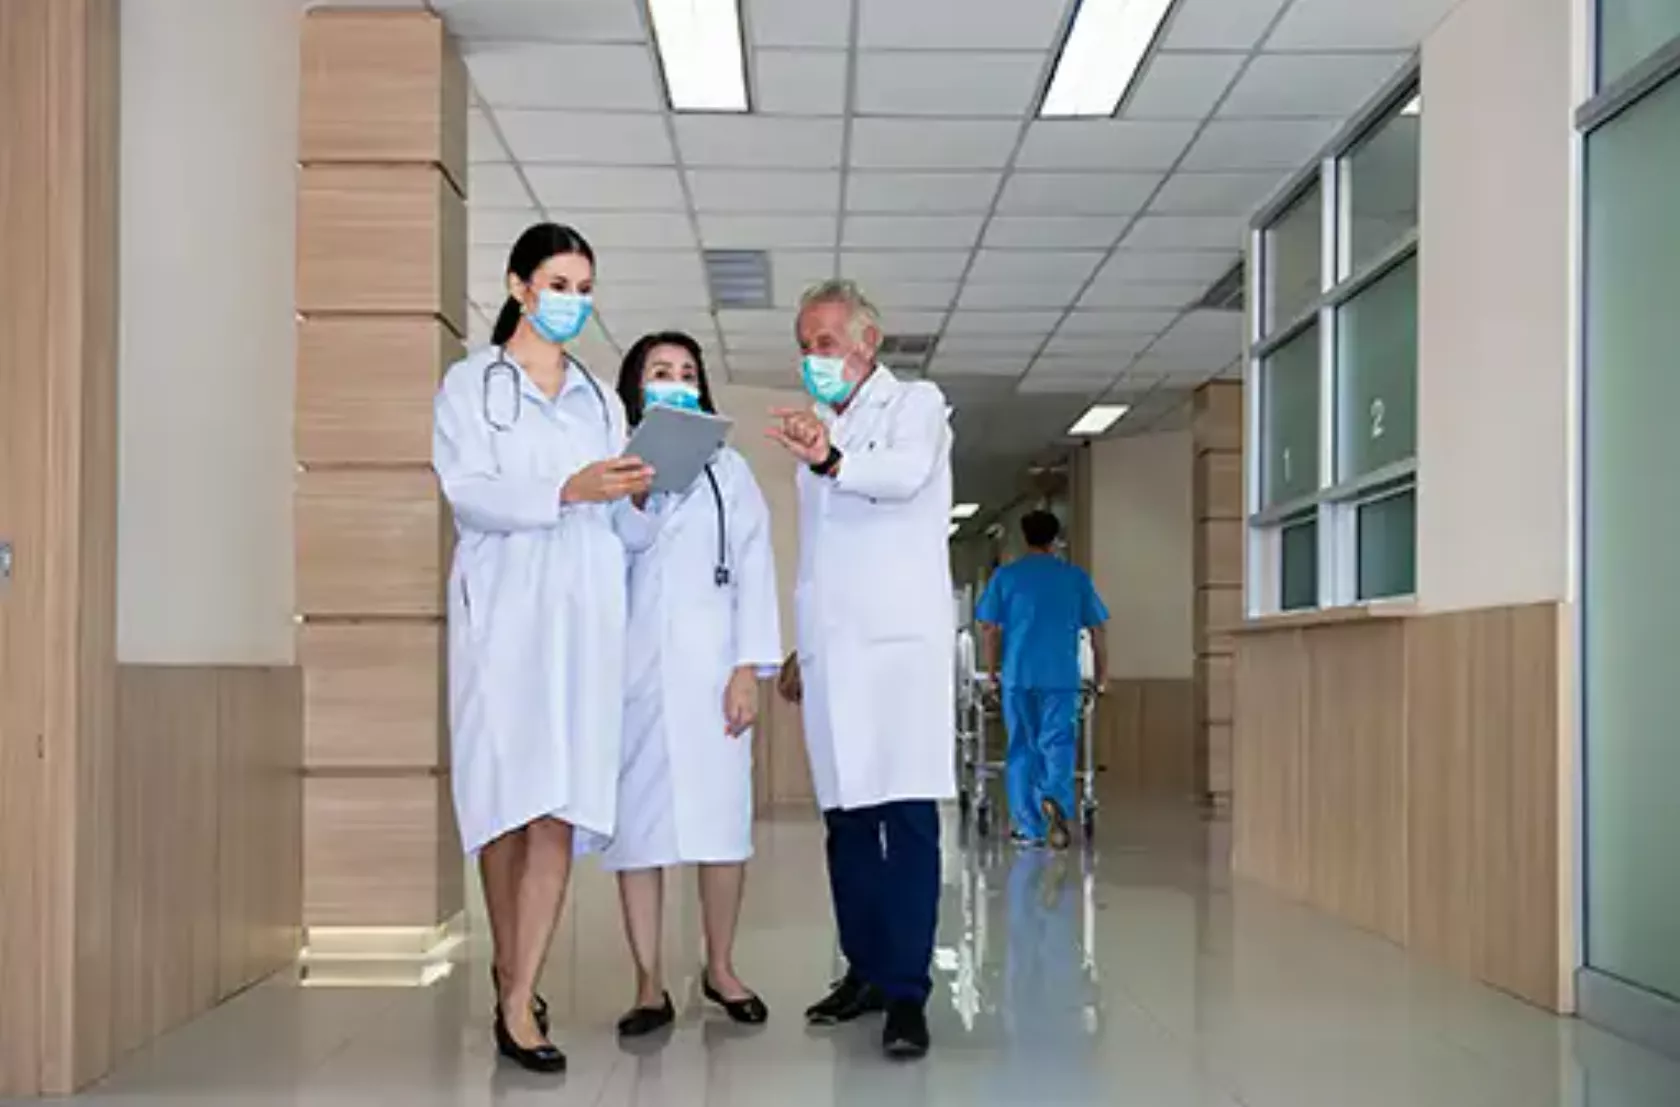 Eine Gruppe Ärztinnen und Ärzte mit OP-Masken diskutiert einen Fall auf dem Krankenhaus-Flur.